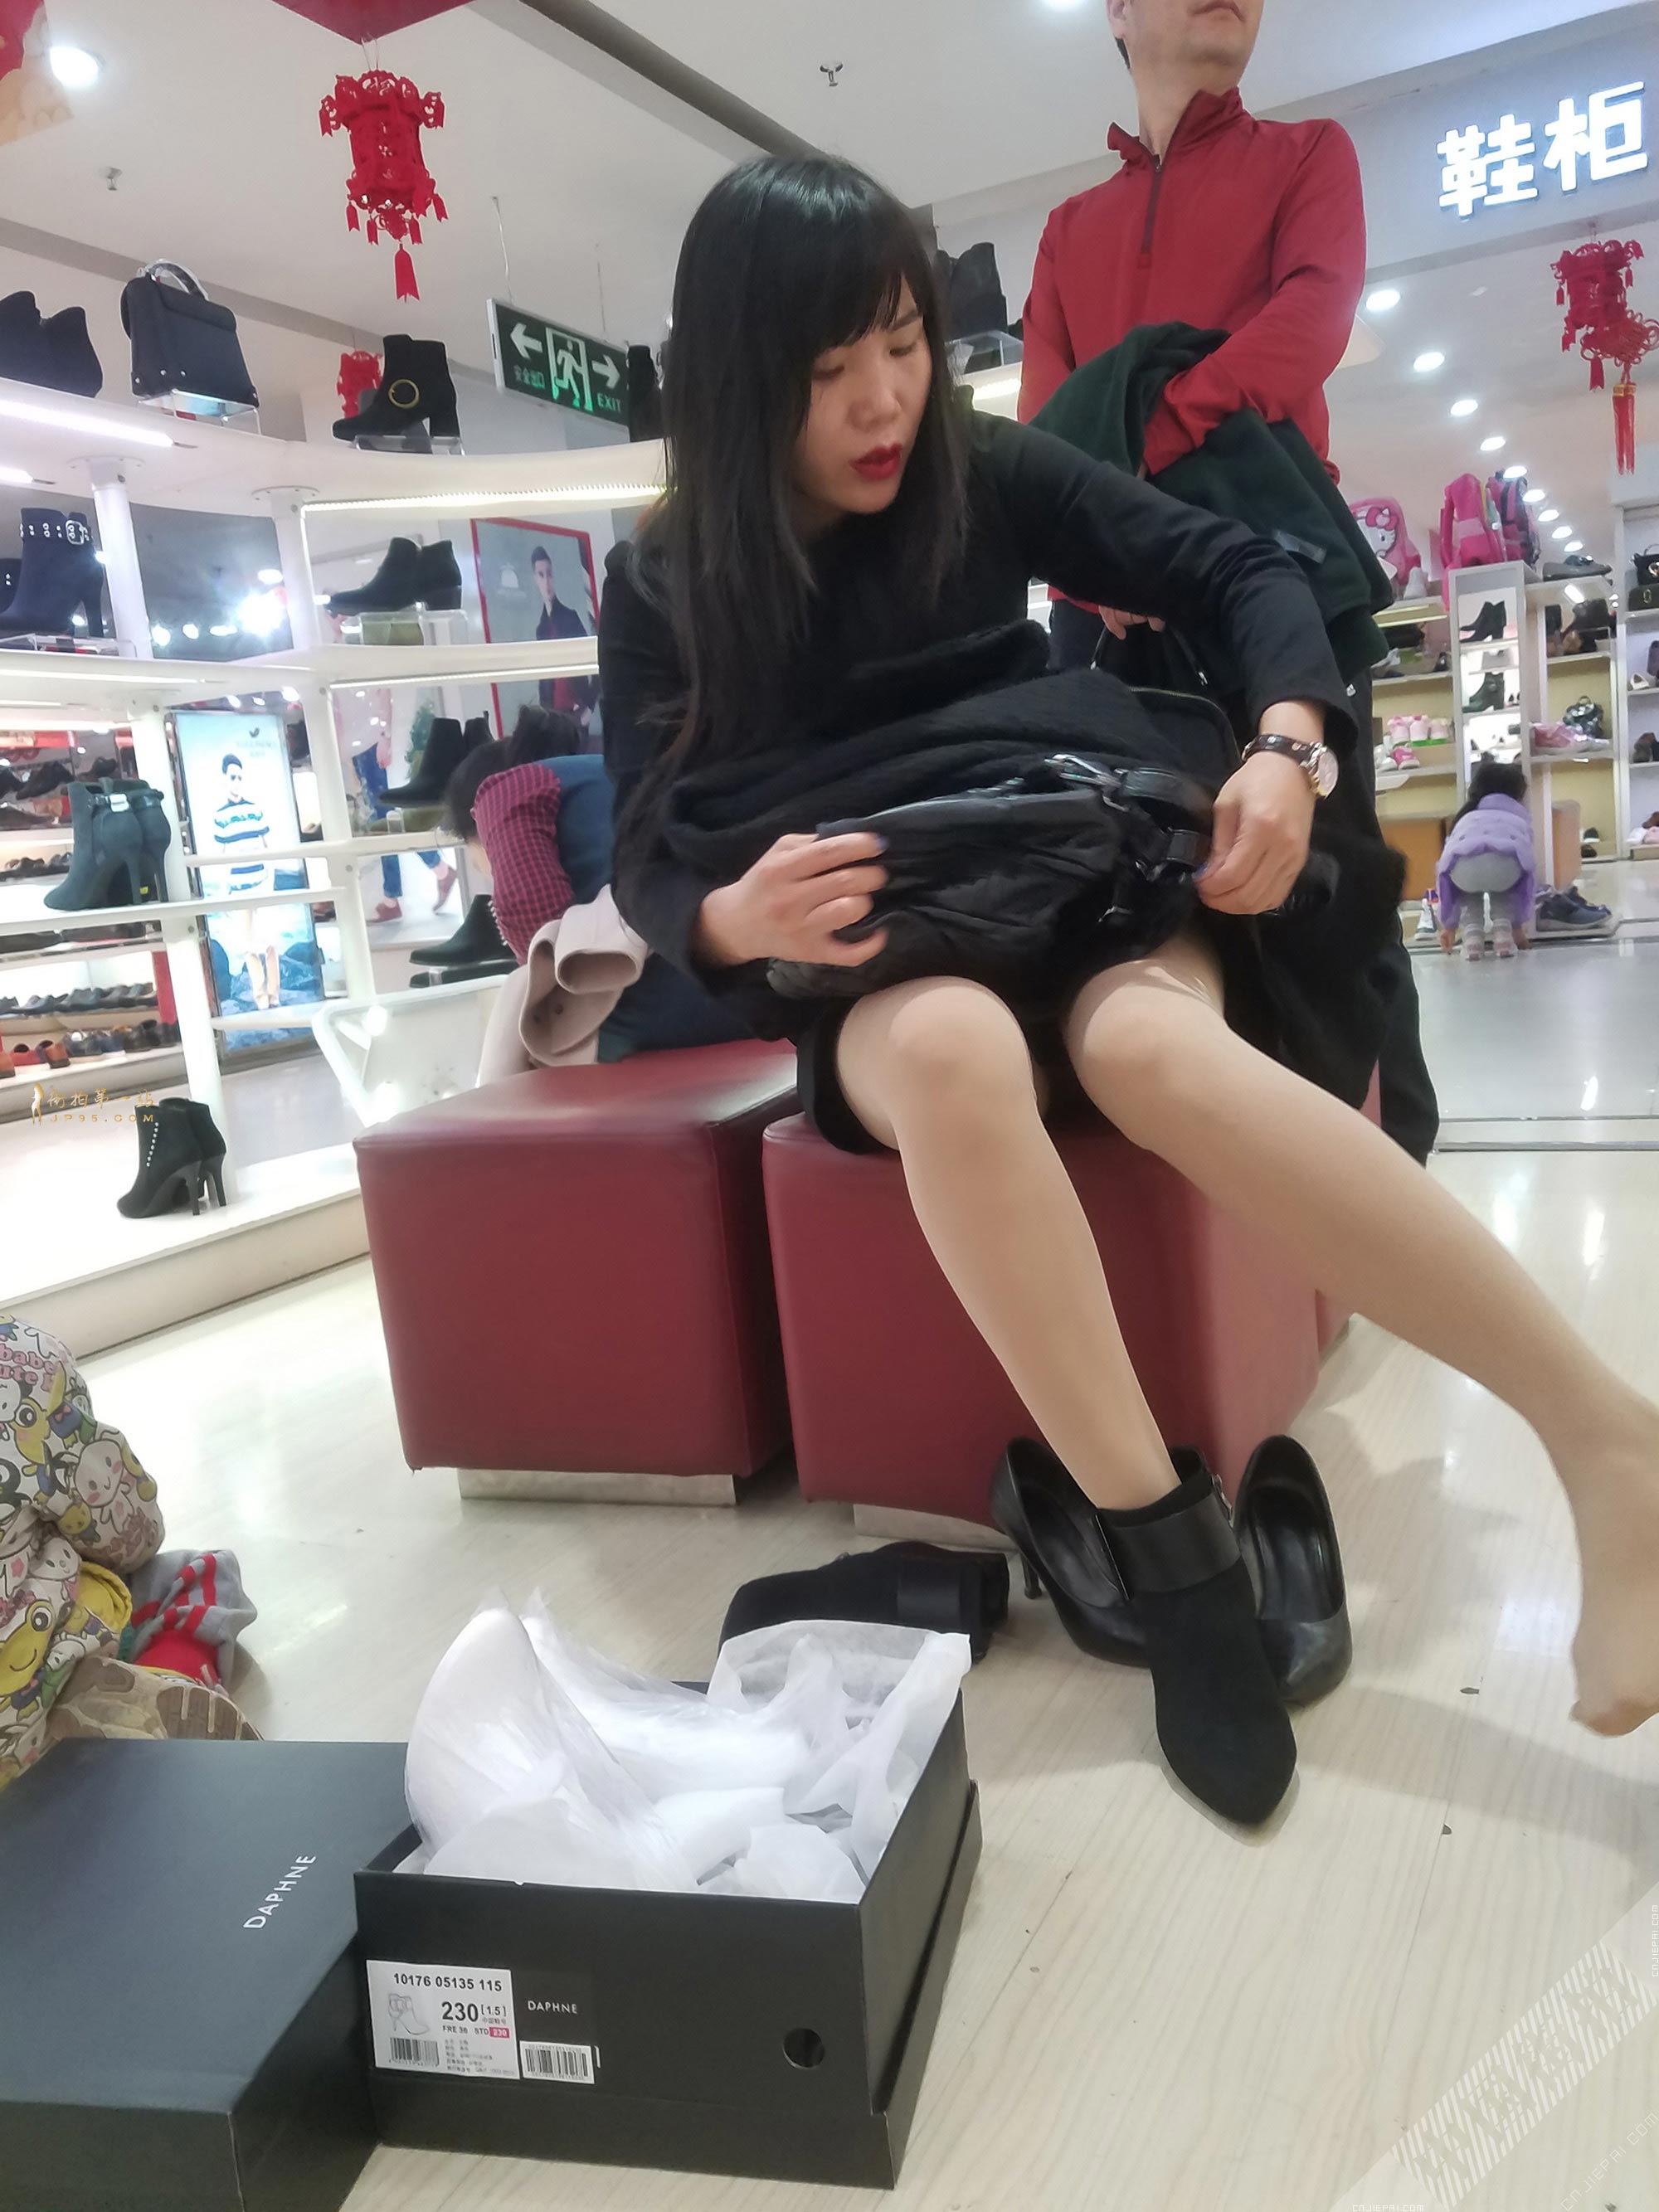 商场买鞋子的少妇，低头整理她脚上的丝袜 图1